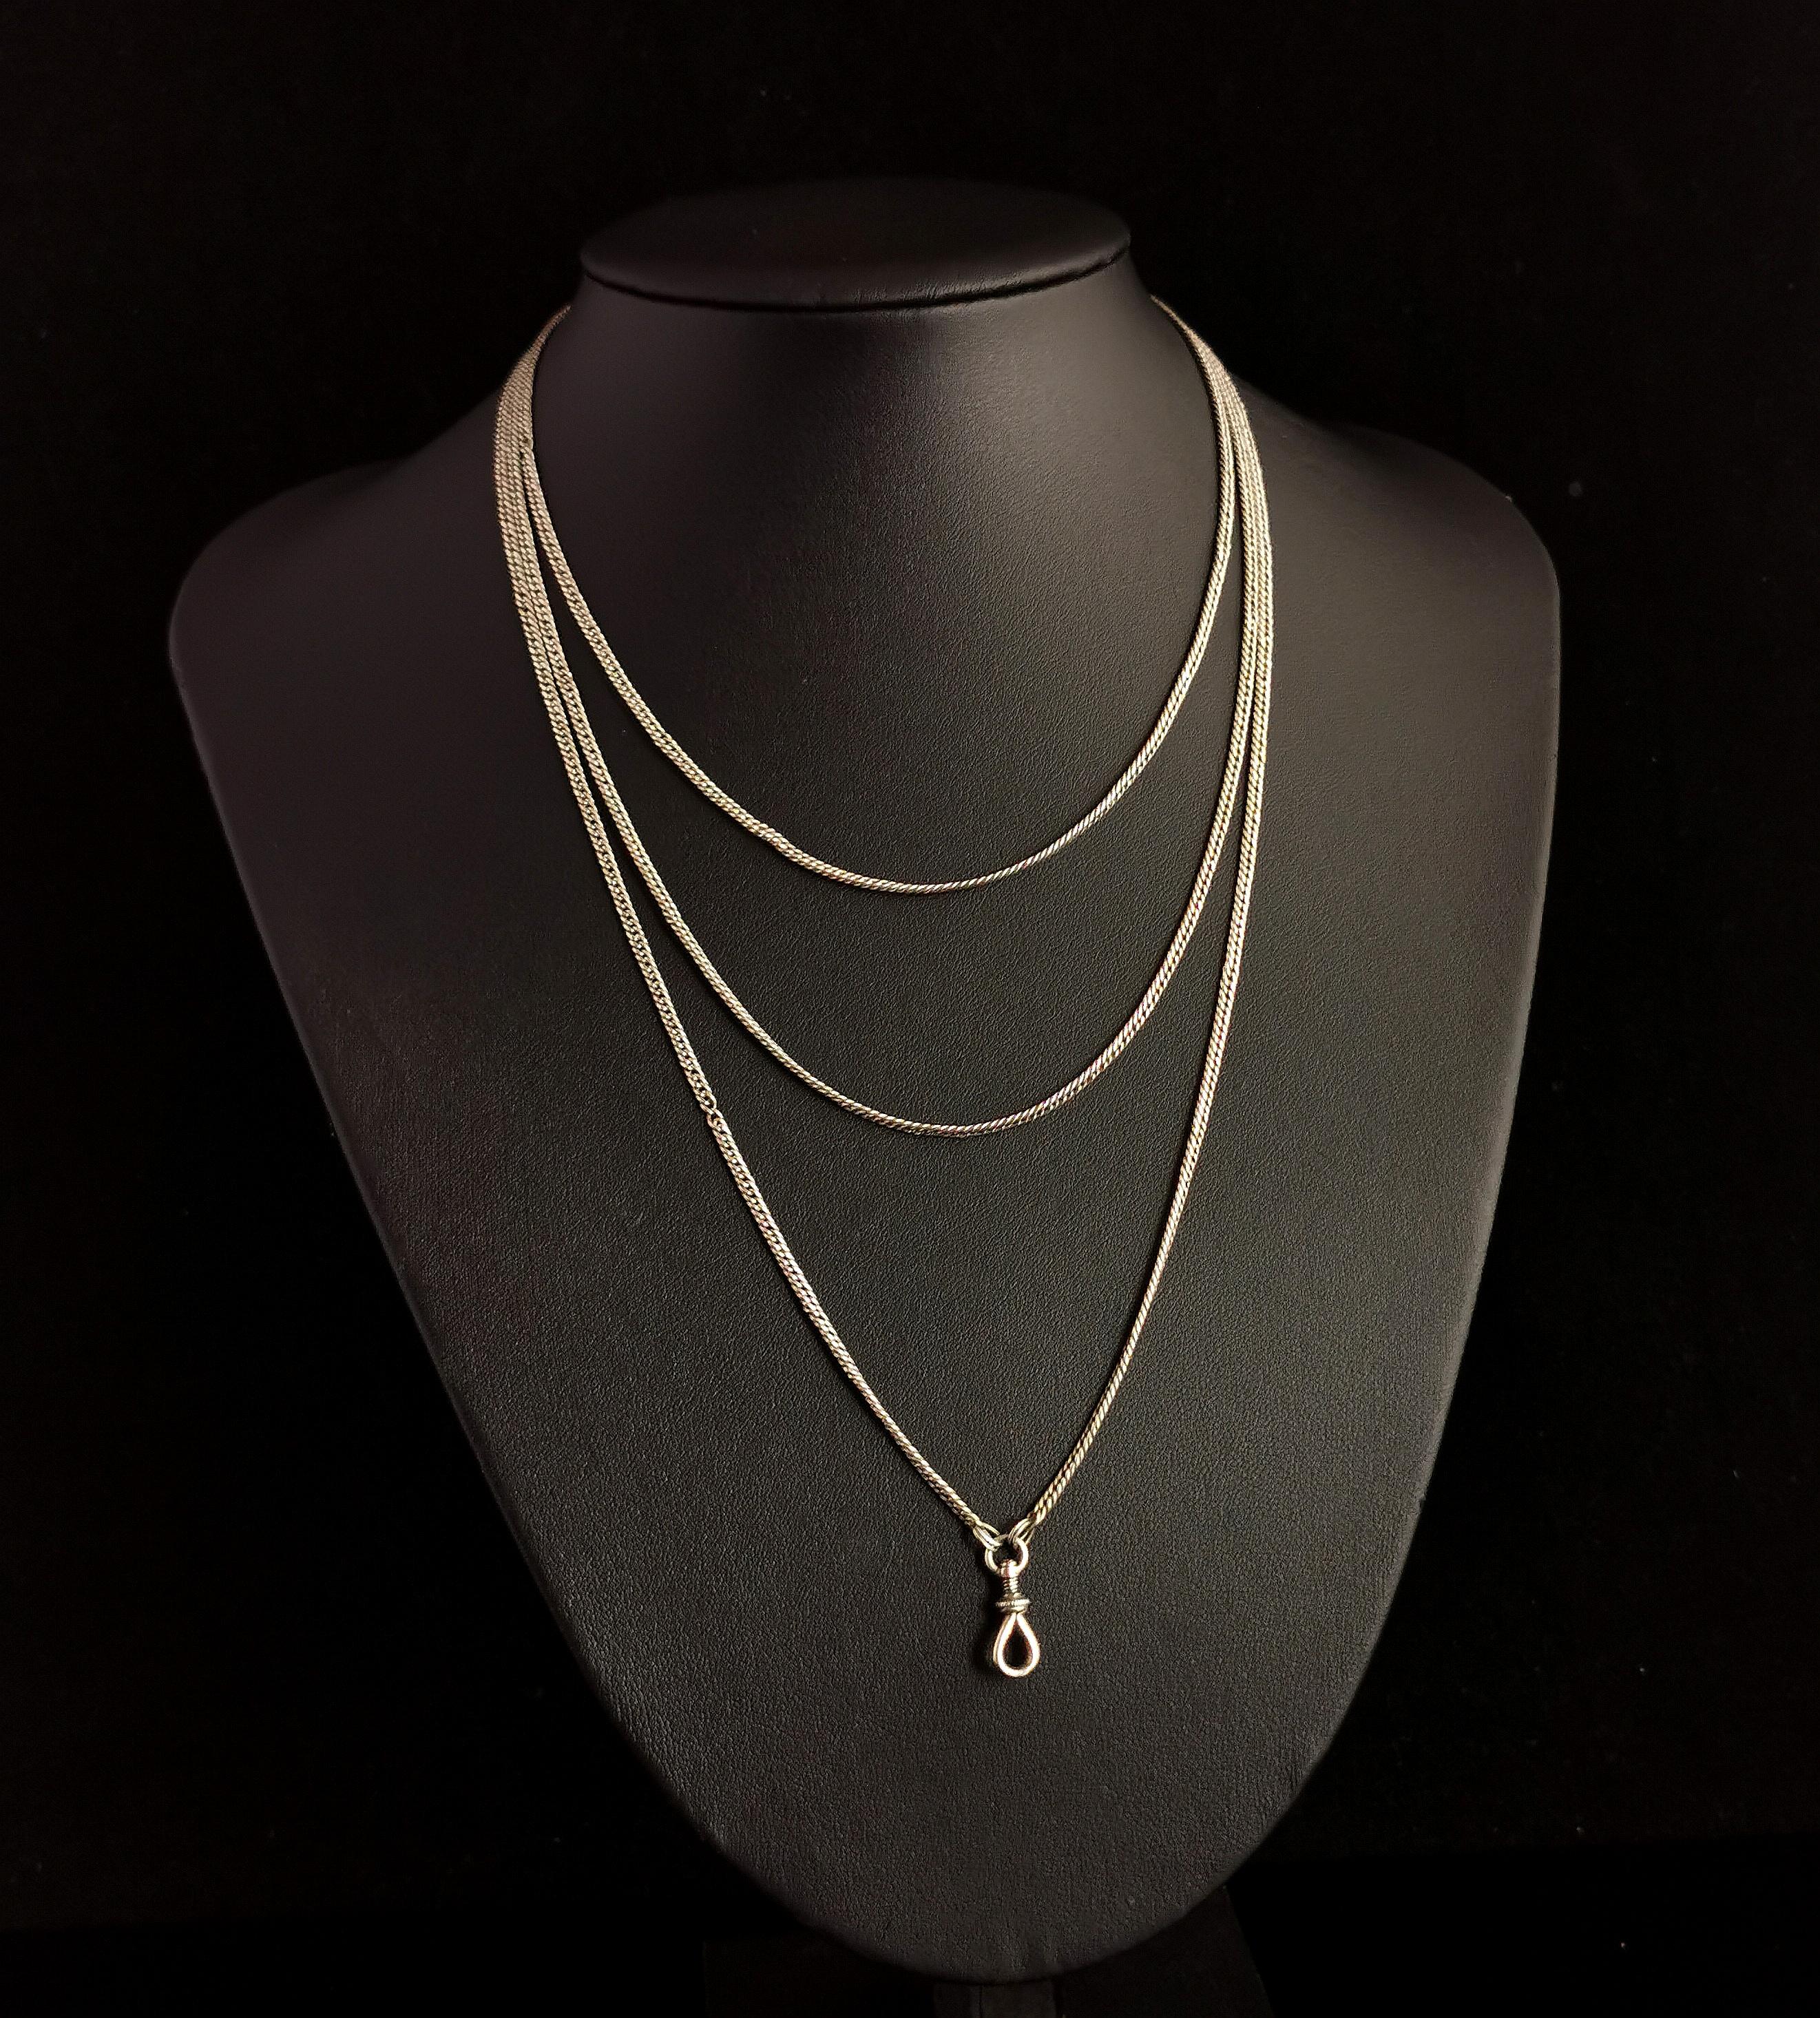 Eine wunderschöne antike silberne Longuard-Kette oder Muff-Kette Halskette.

Dies ist eine schöne lange Kette bei 53 